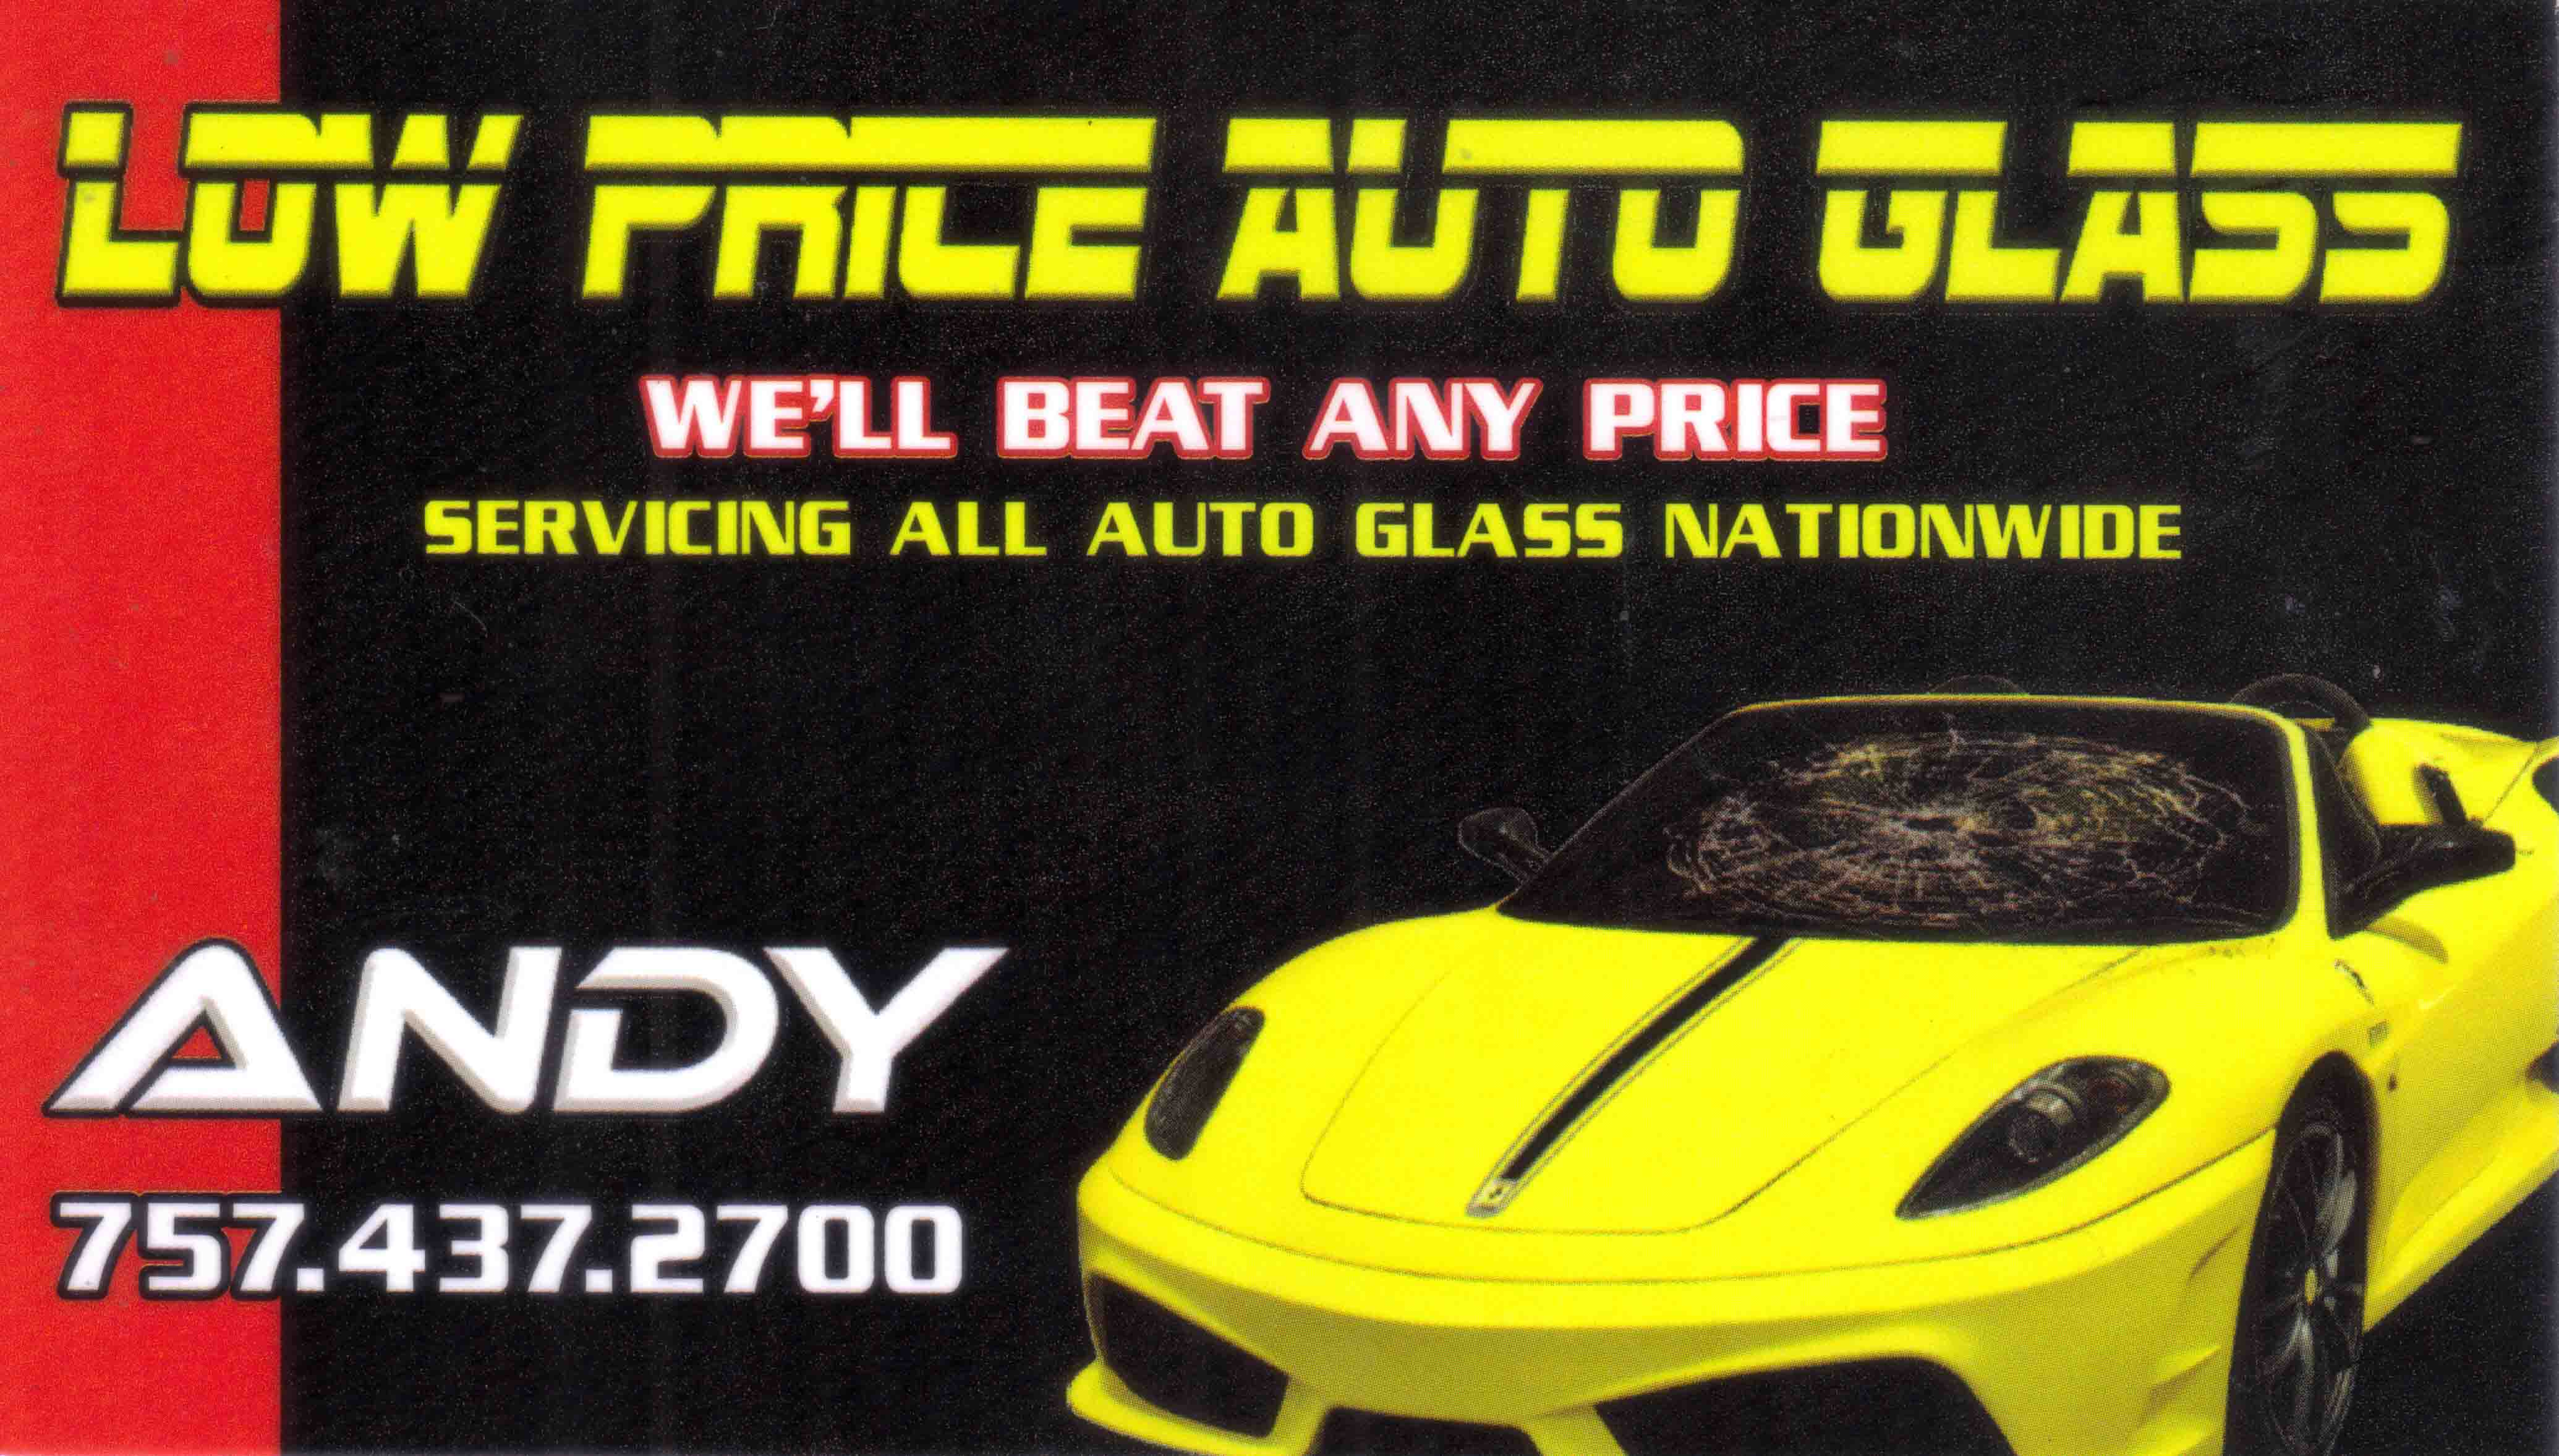 Low Price Auto Glass, Andy Oshana